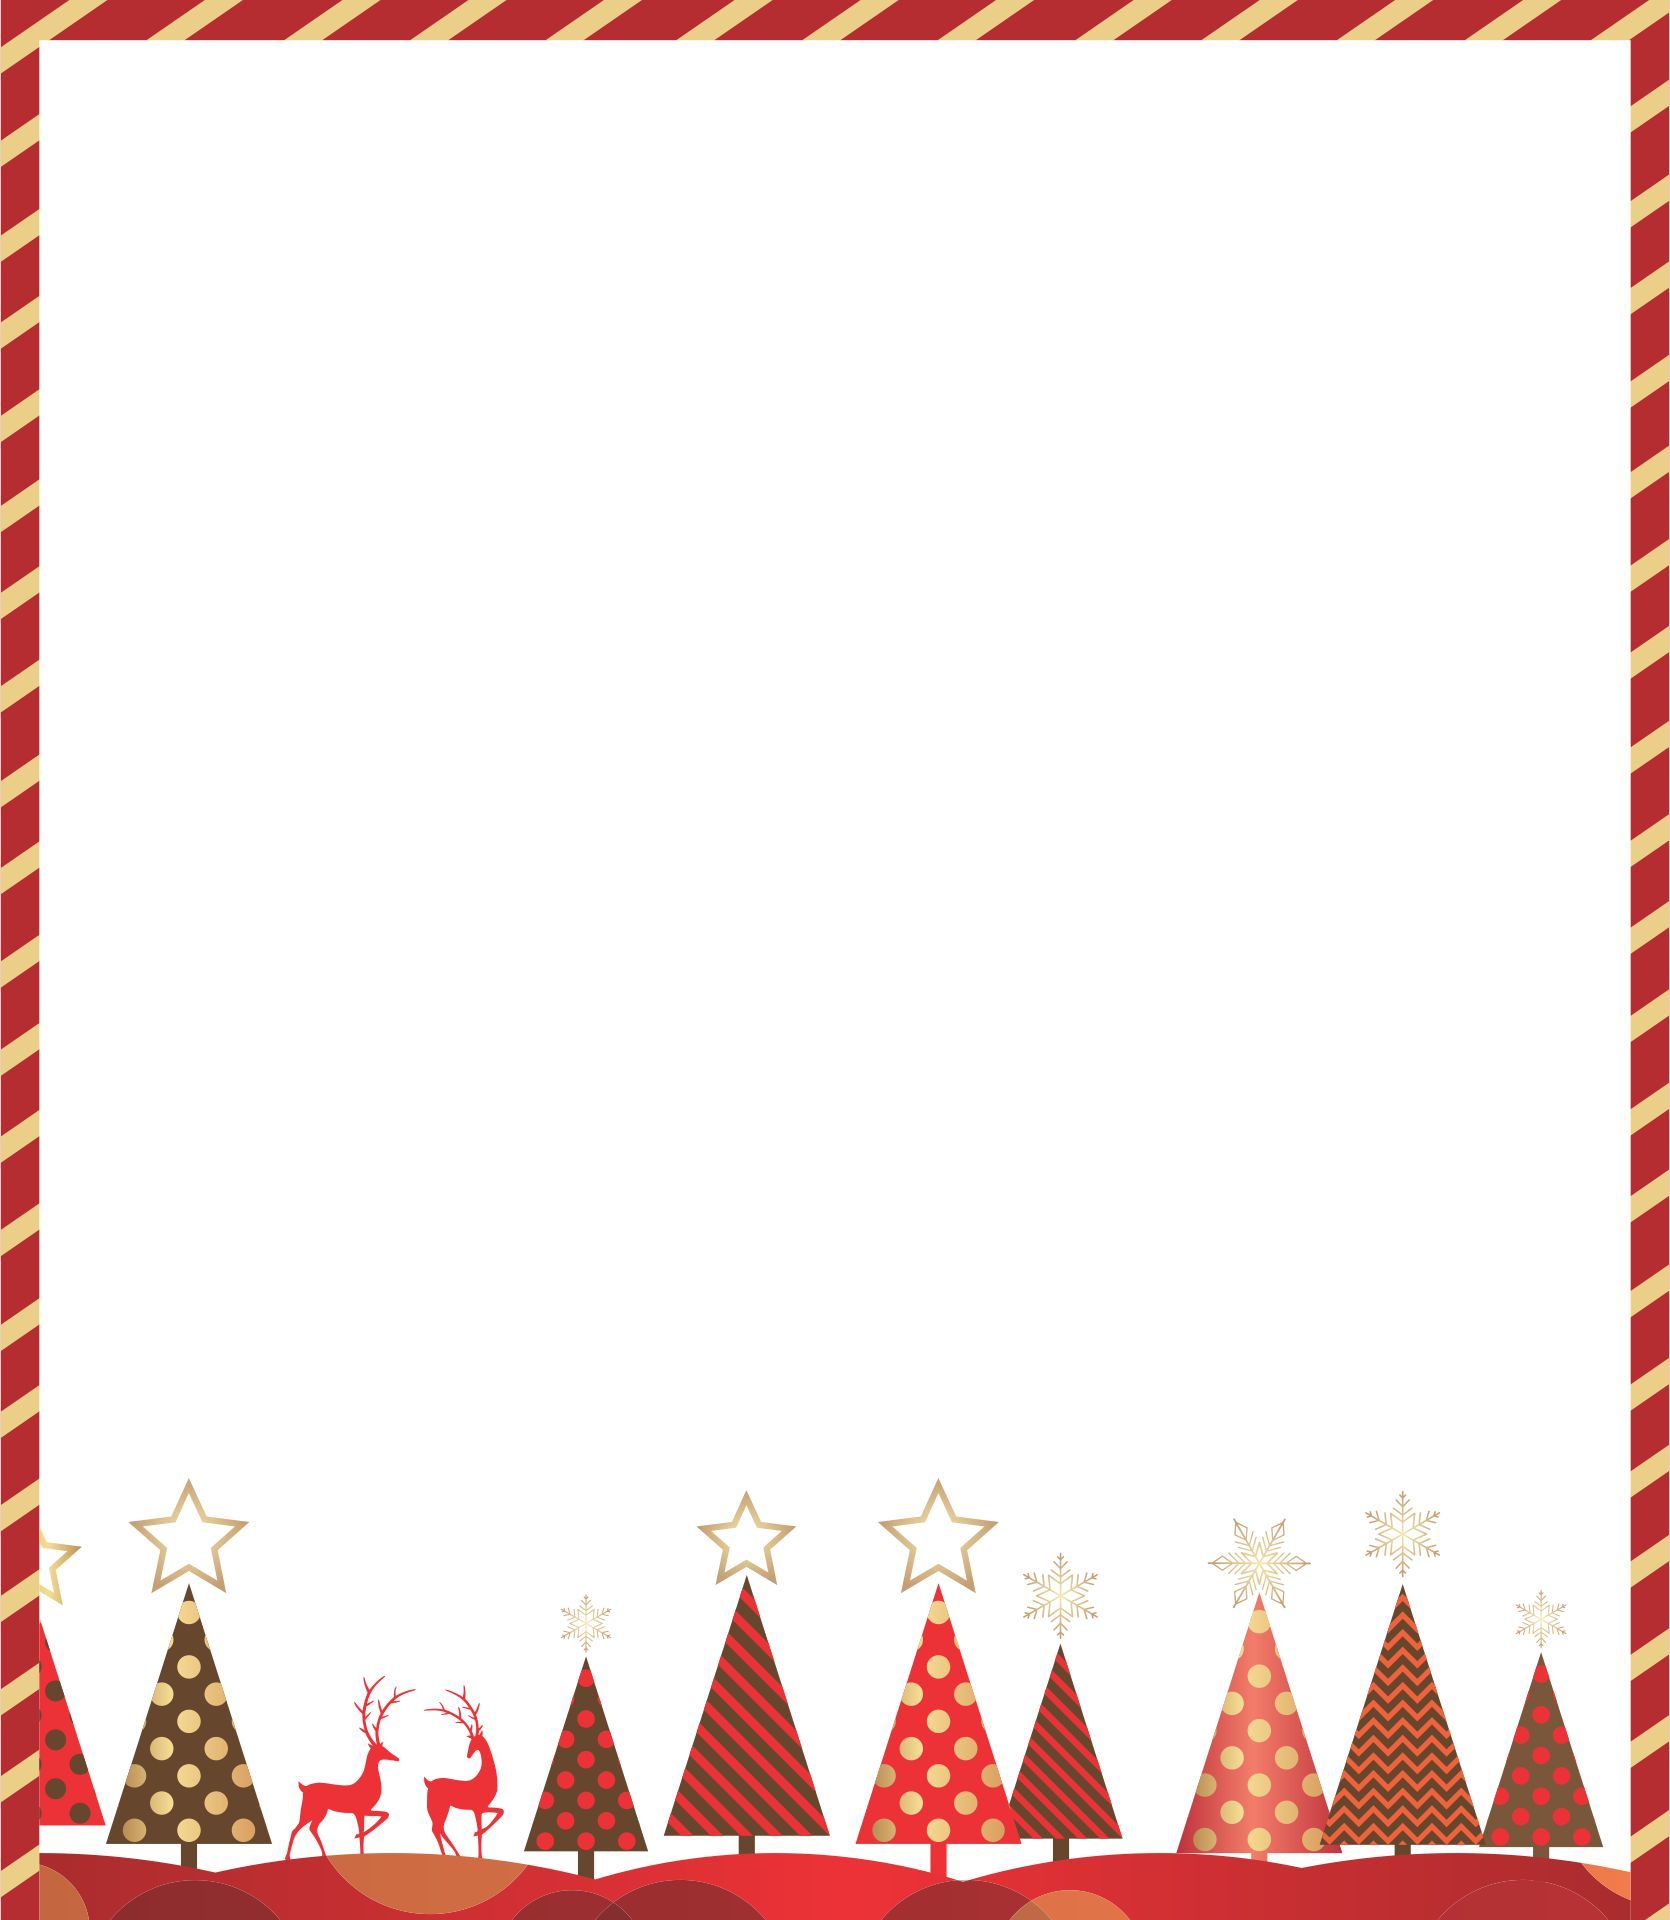 Printable Christmas Borders For Flyers_29370